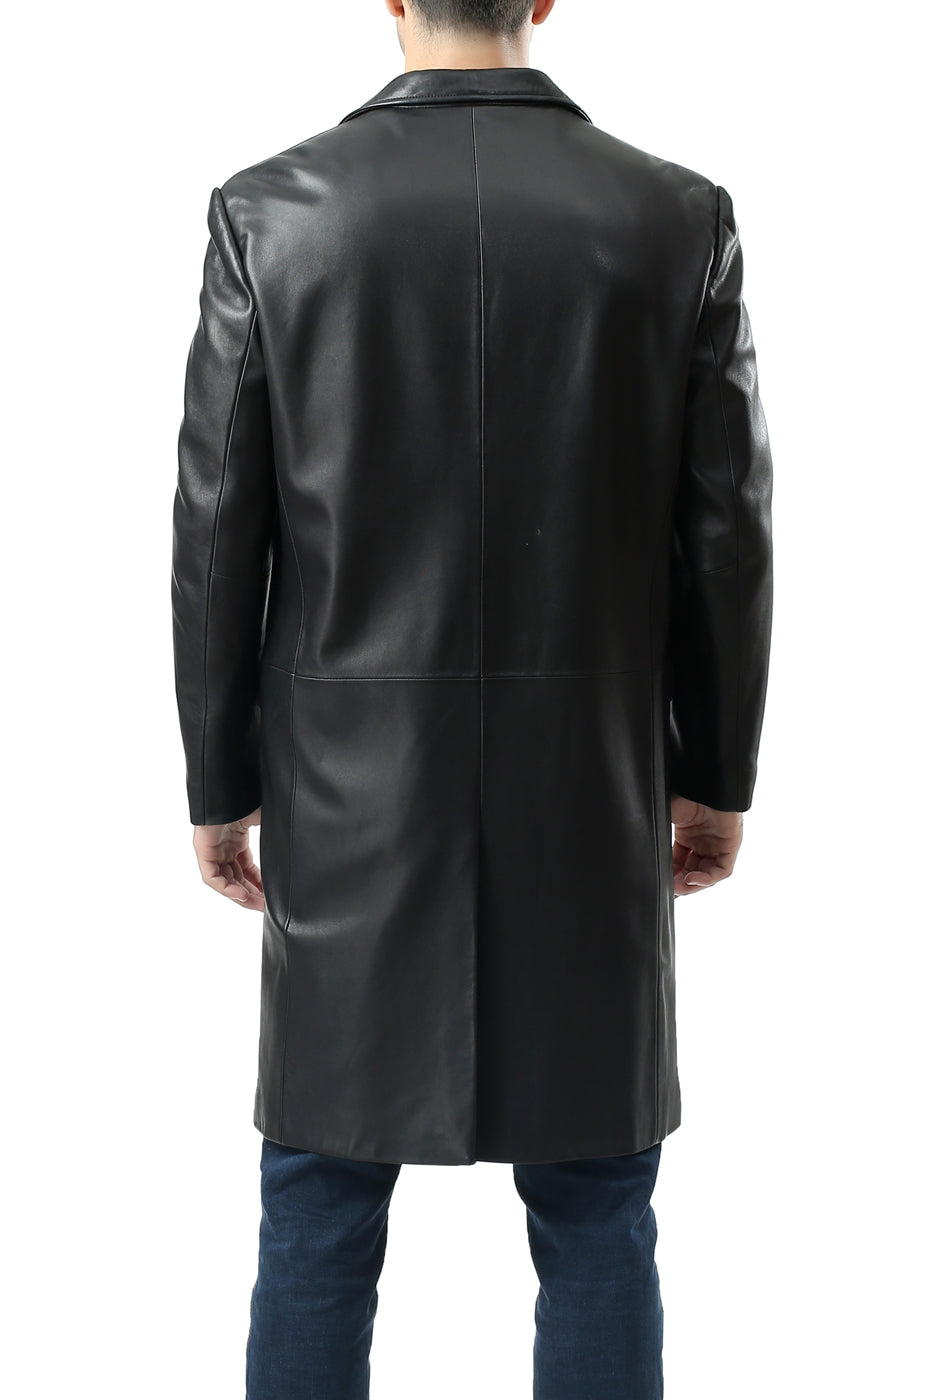 BGSD Men New Zealand Lambskin Leather Long Walking Coat